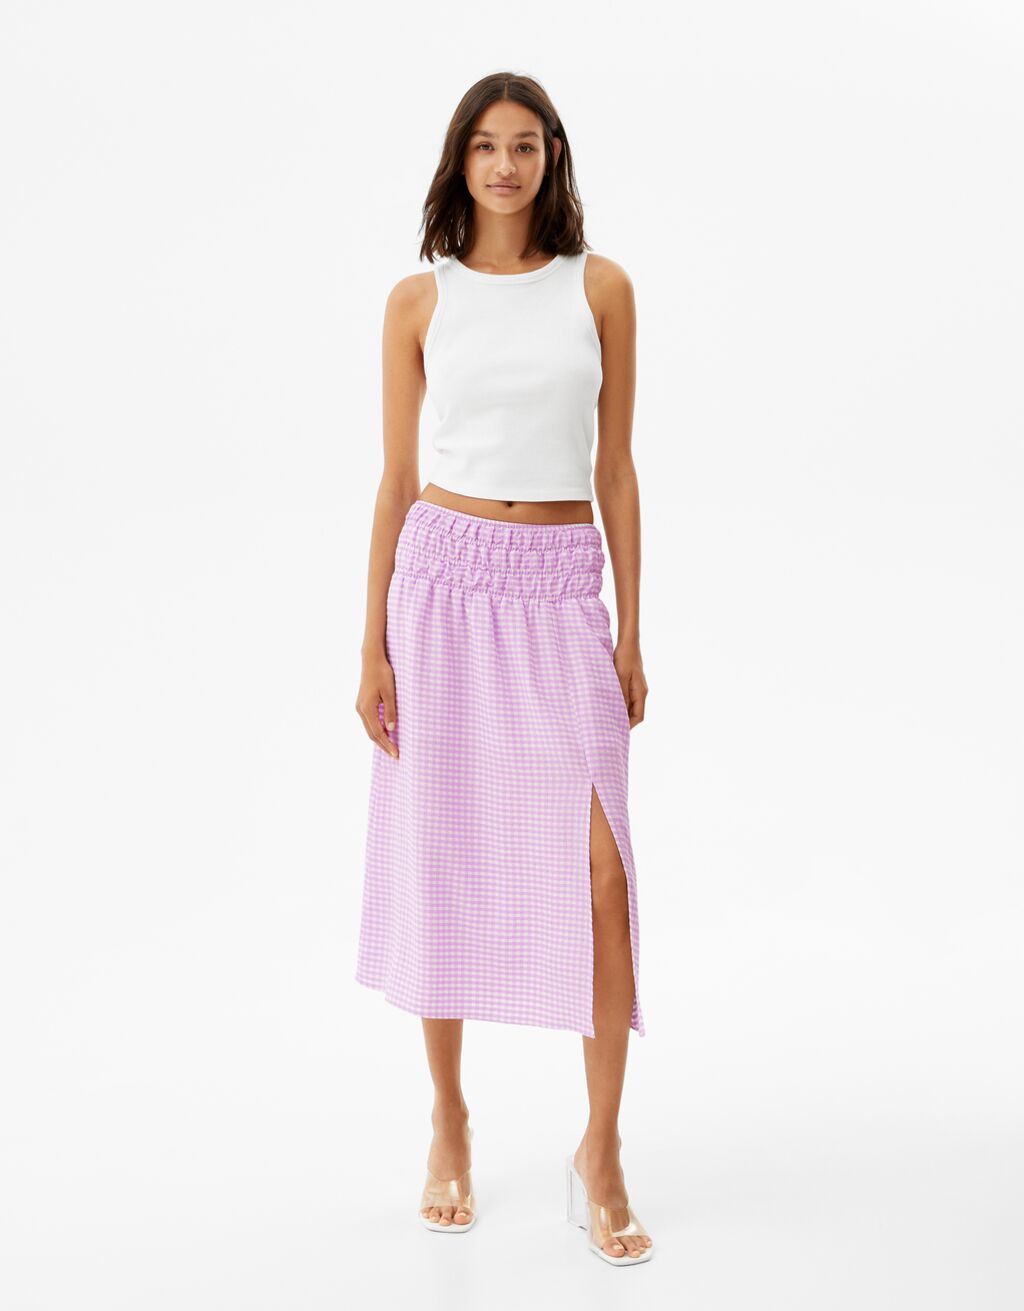 Gingham midi skirt with an elastic waistband